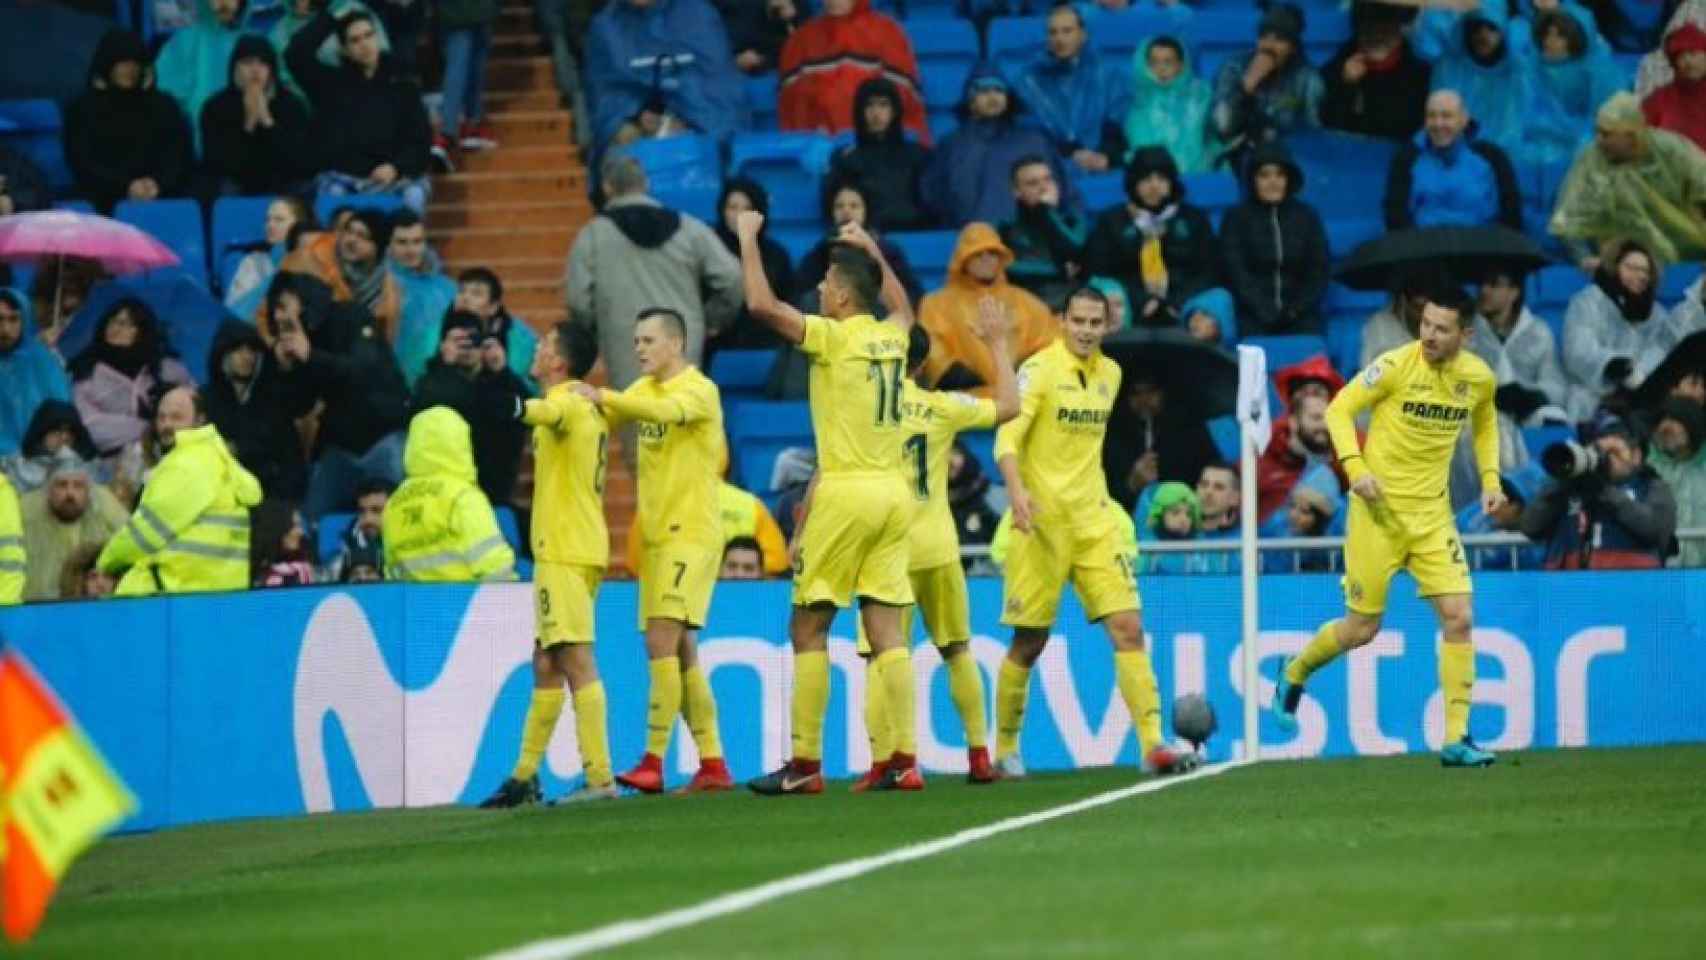 El Villarreal celebrando el gol al Madrid. Foto: Manu Laya / El Bernabéu